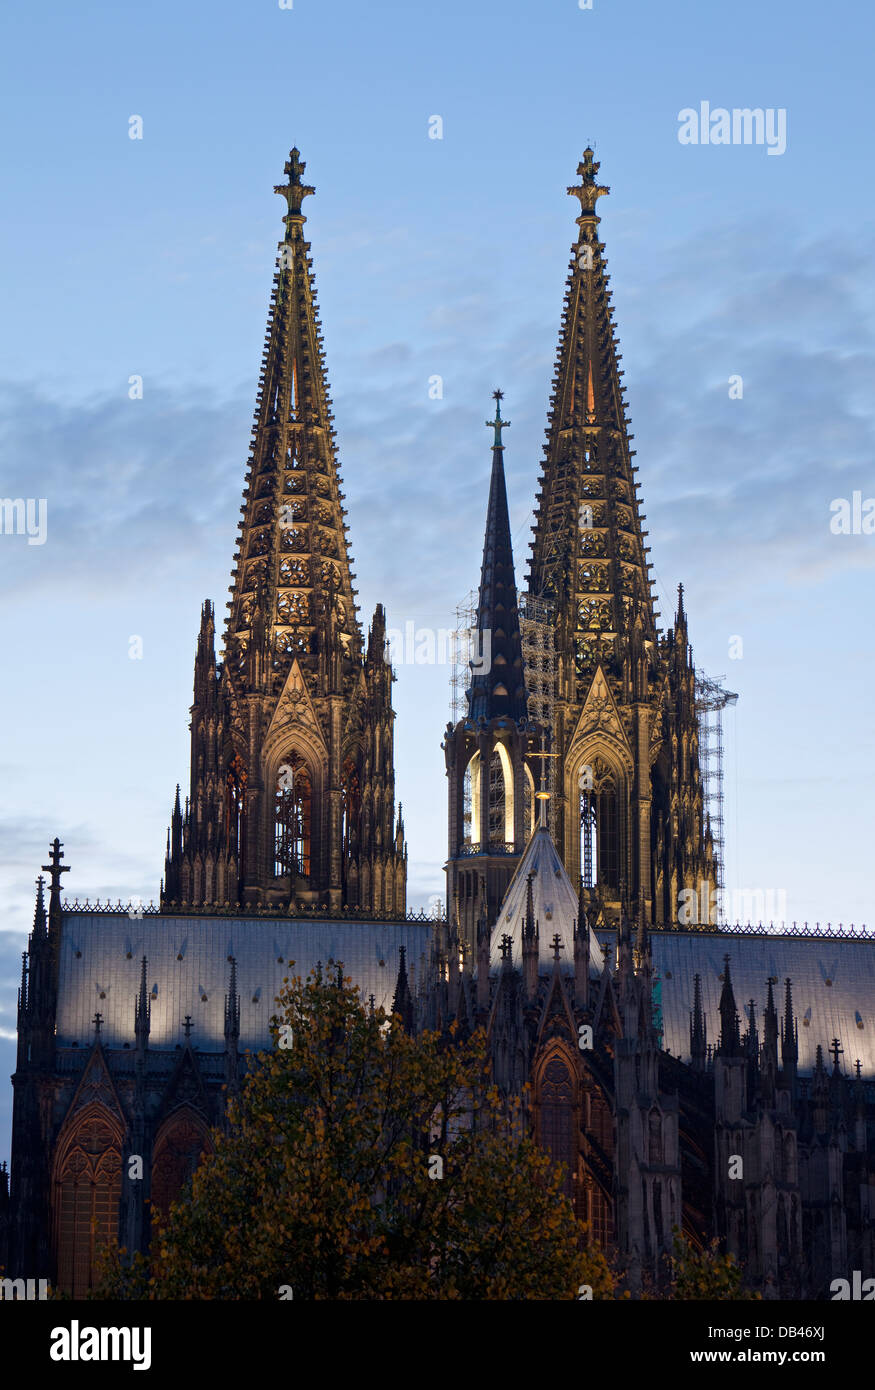 Les tours jumelles de la cathédrale de Cologne (Hohe Domkirche St. Petrus) au crépuscule, Cologne, Rhénanie du Nord-Westphalie, Allemagne Banque D'Images